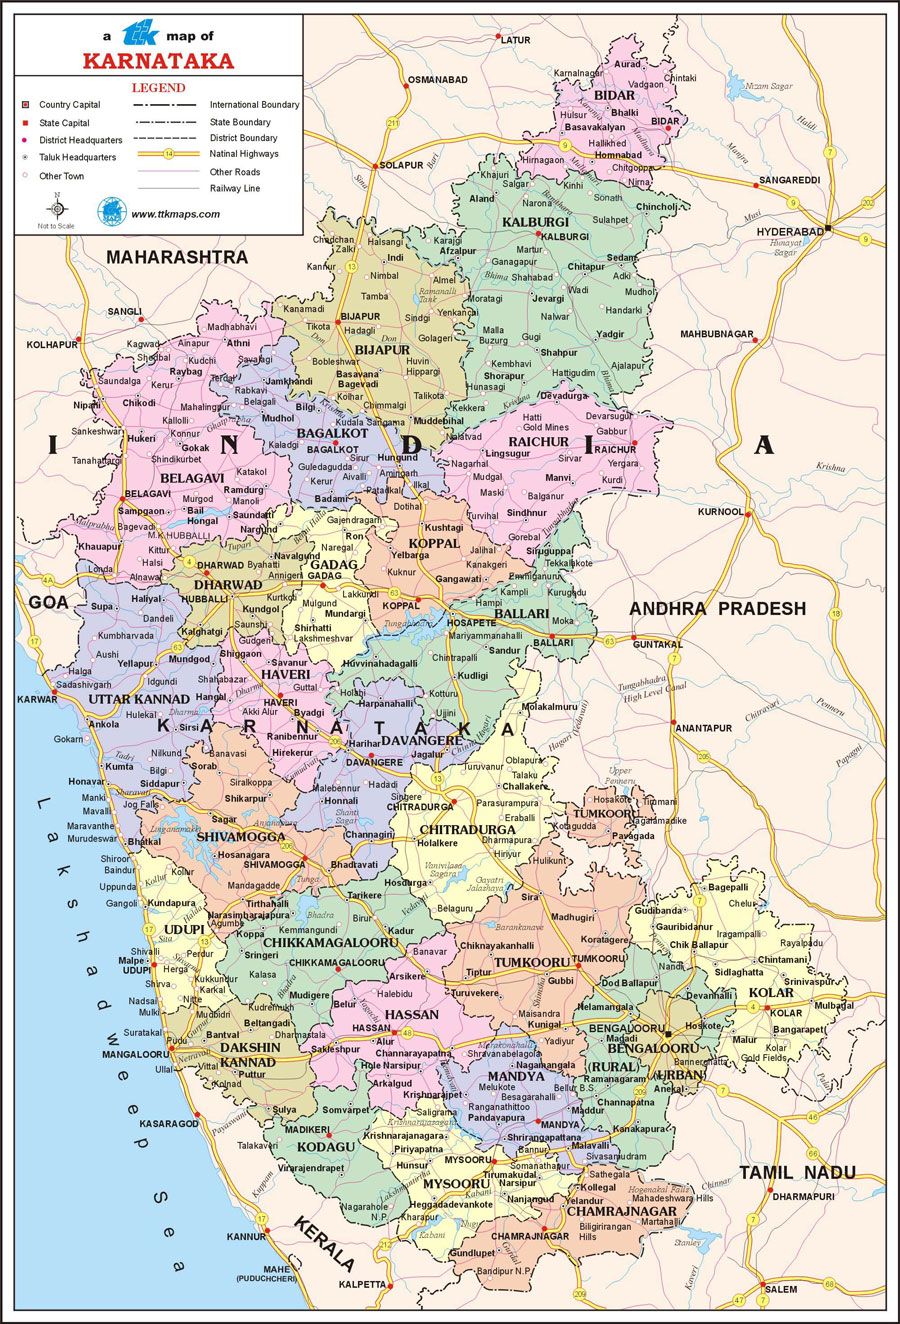 Jungle Maps: Map Of Karnataka And Kerala